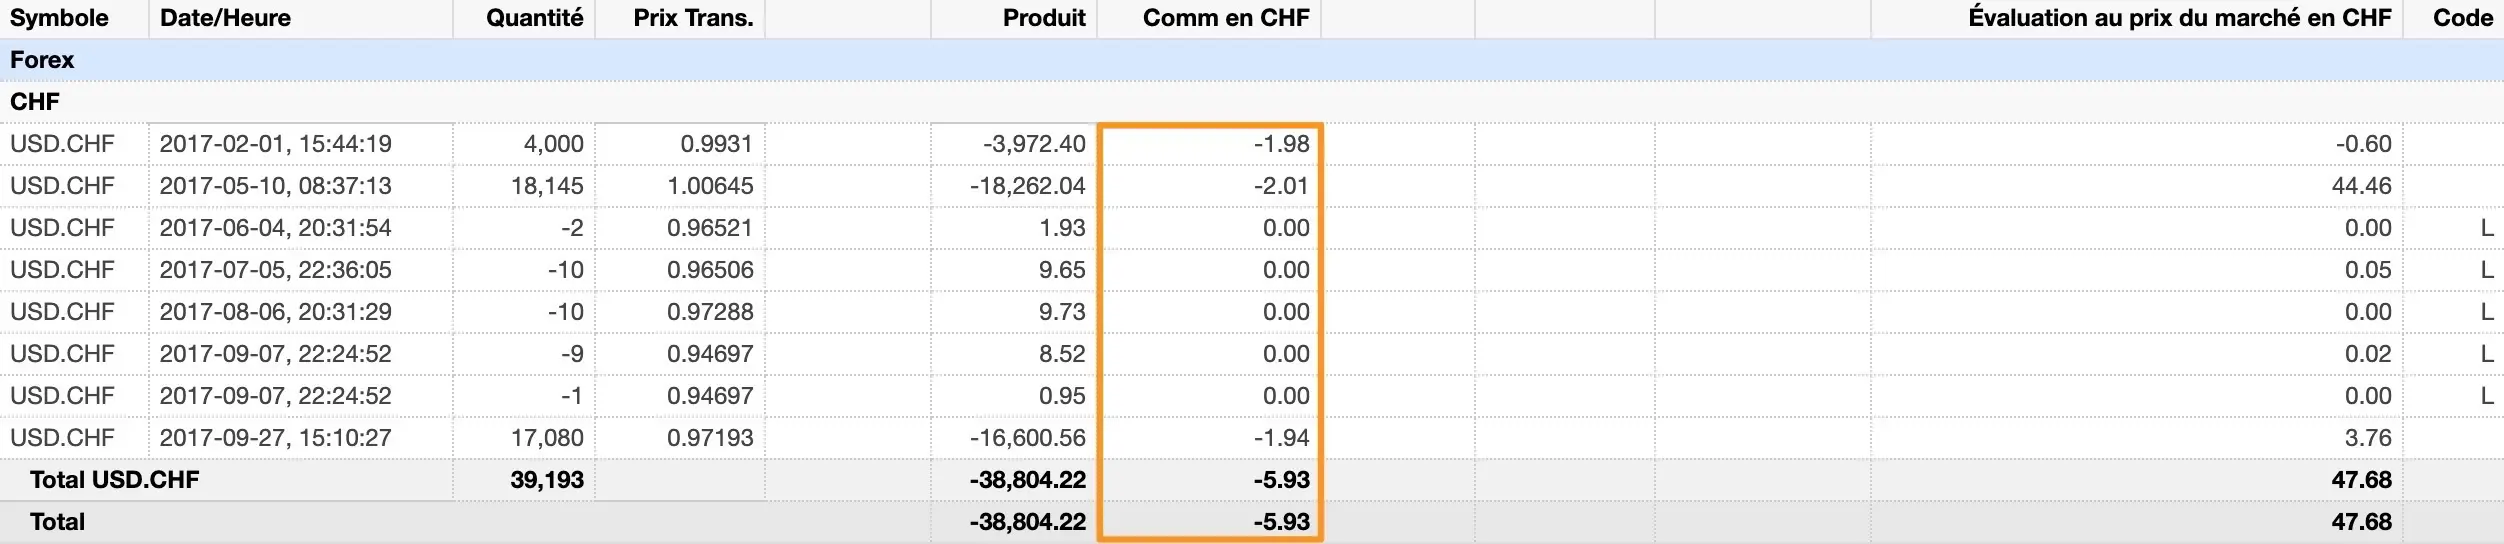 CHF 5.93 de frais de change pour environ CHF 40'000 d'emplettes :)